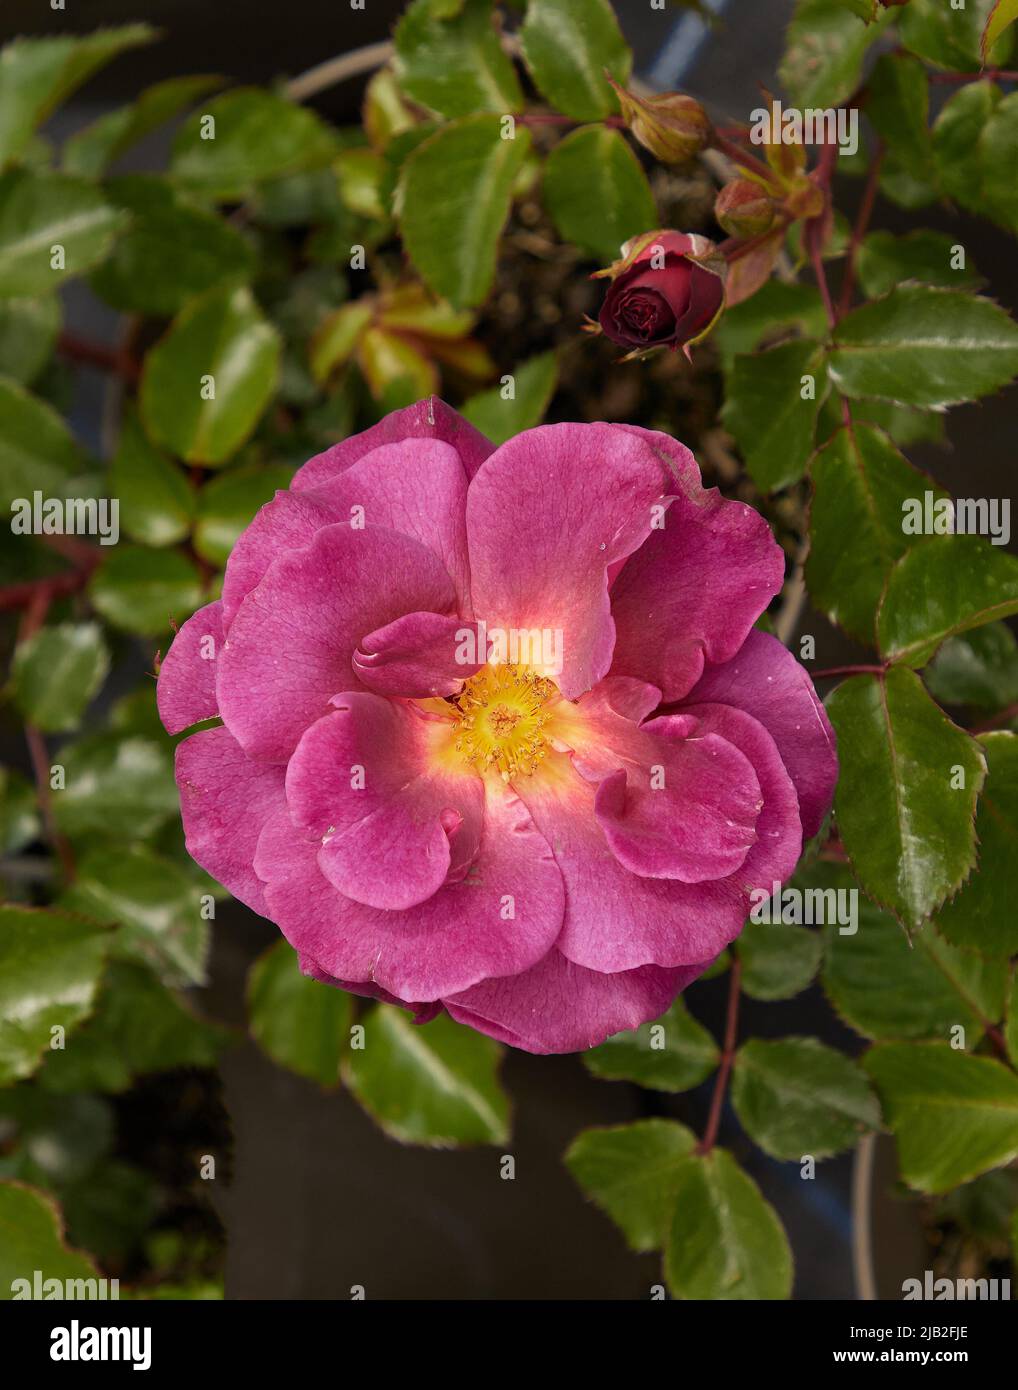 Close up of Rosa Wild Rover, a floribunda rose, seen outdoors in the garden. Stock Photo